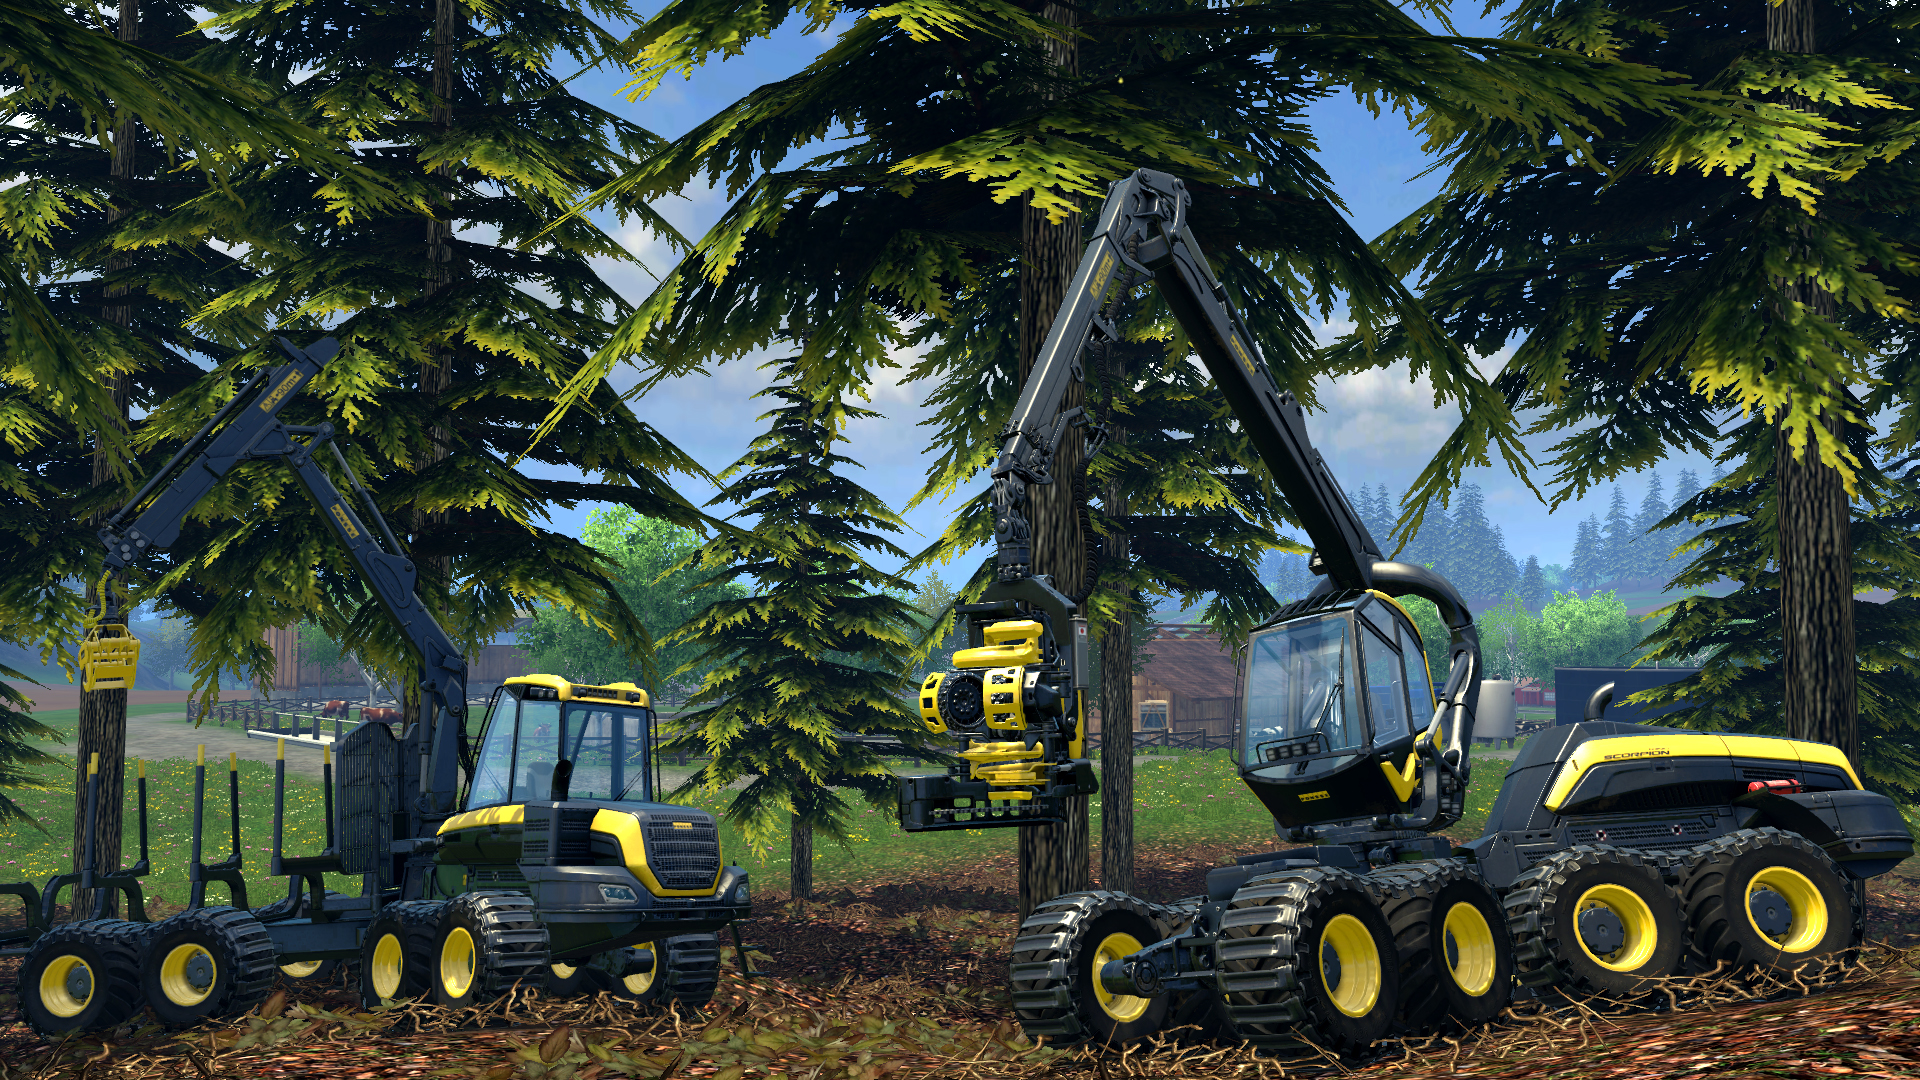 farming simulator 15 download free full version mac